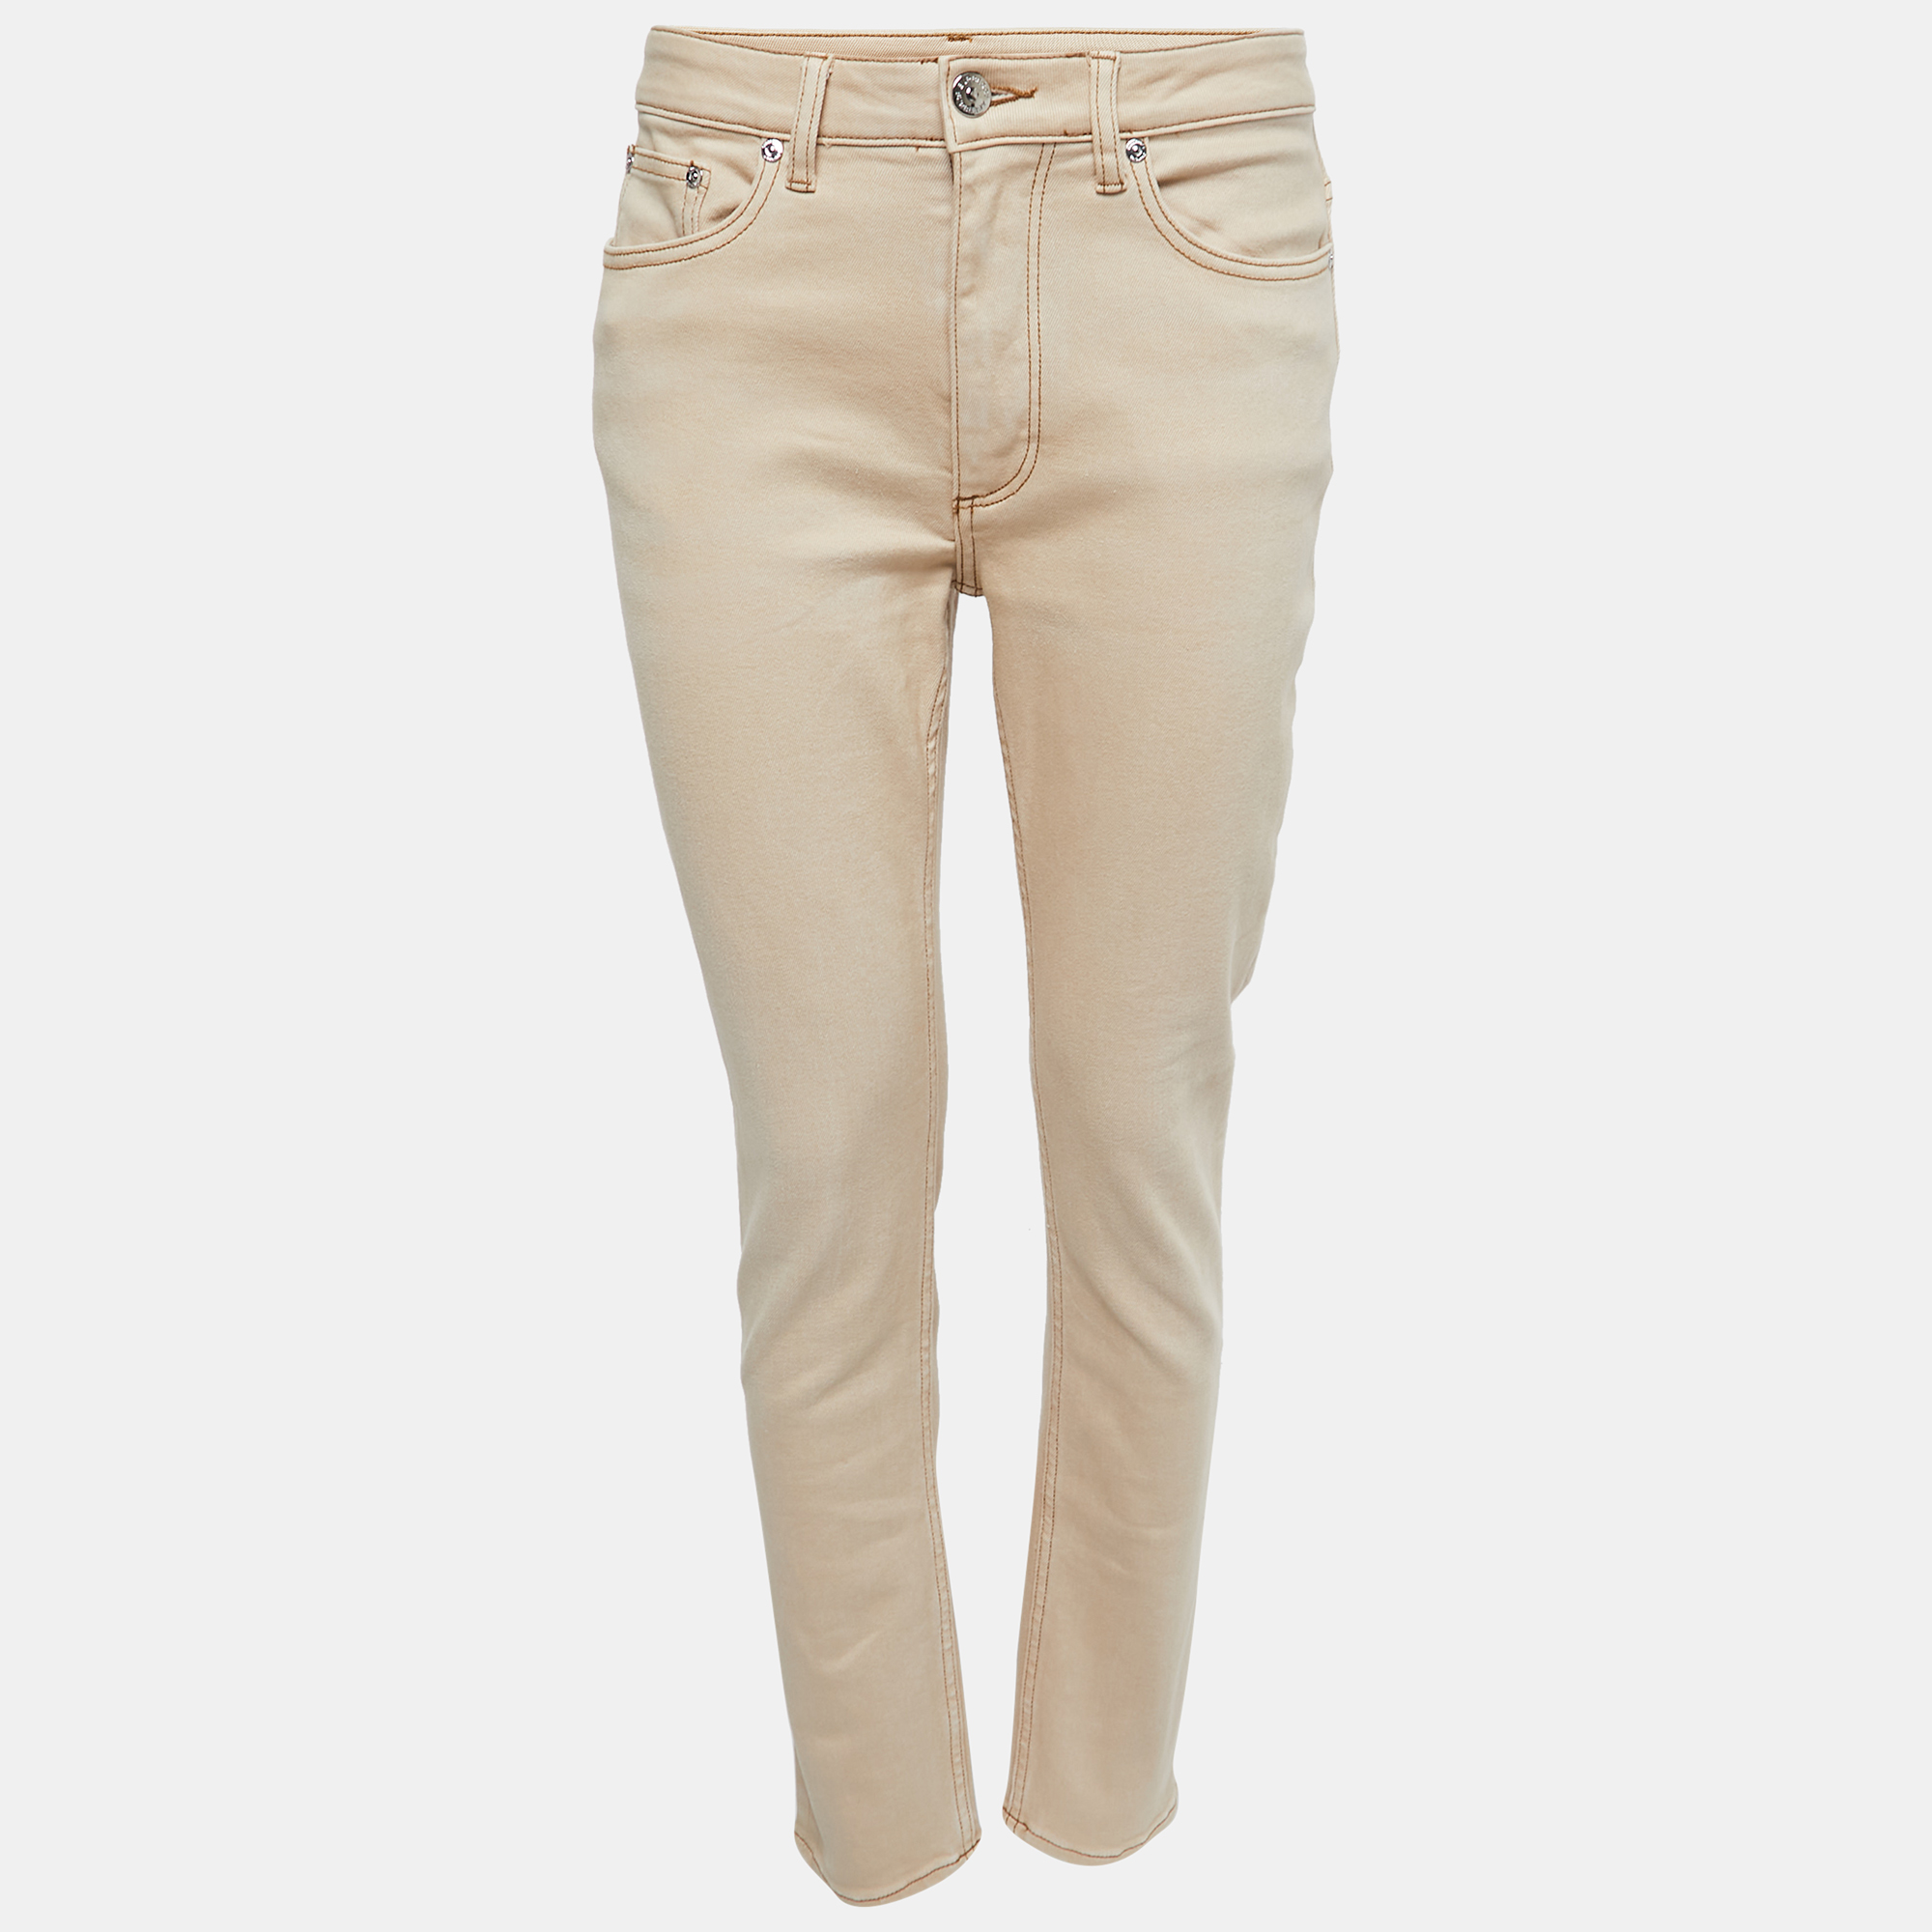 Burberry Beige Denim Slim-Fit Jeans M Waist 28